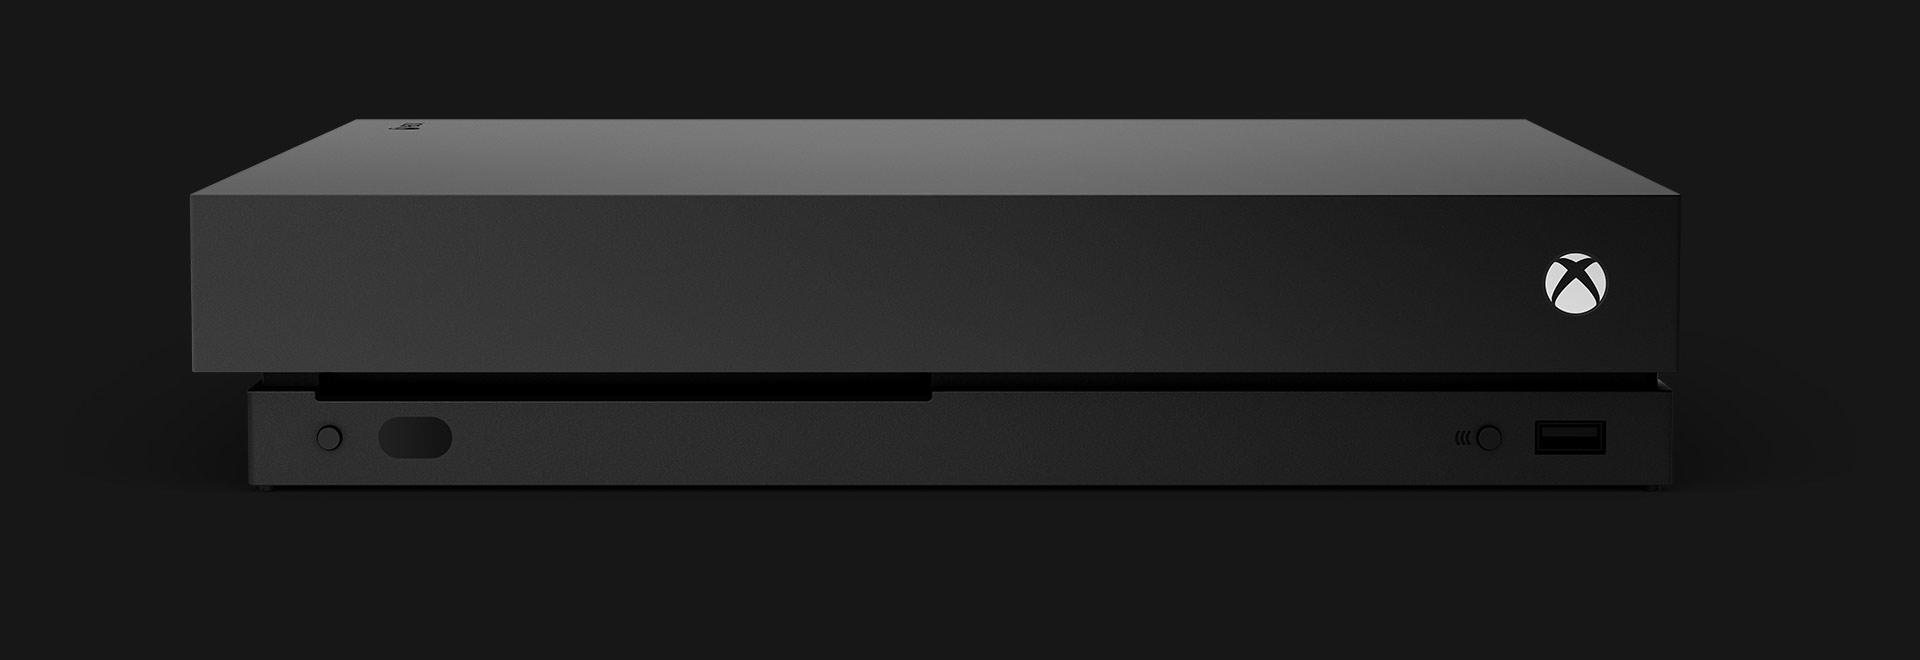 En Xbox One X-konsol set forfra.